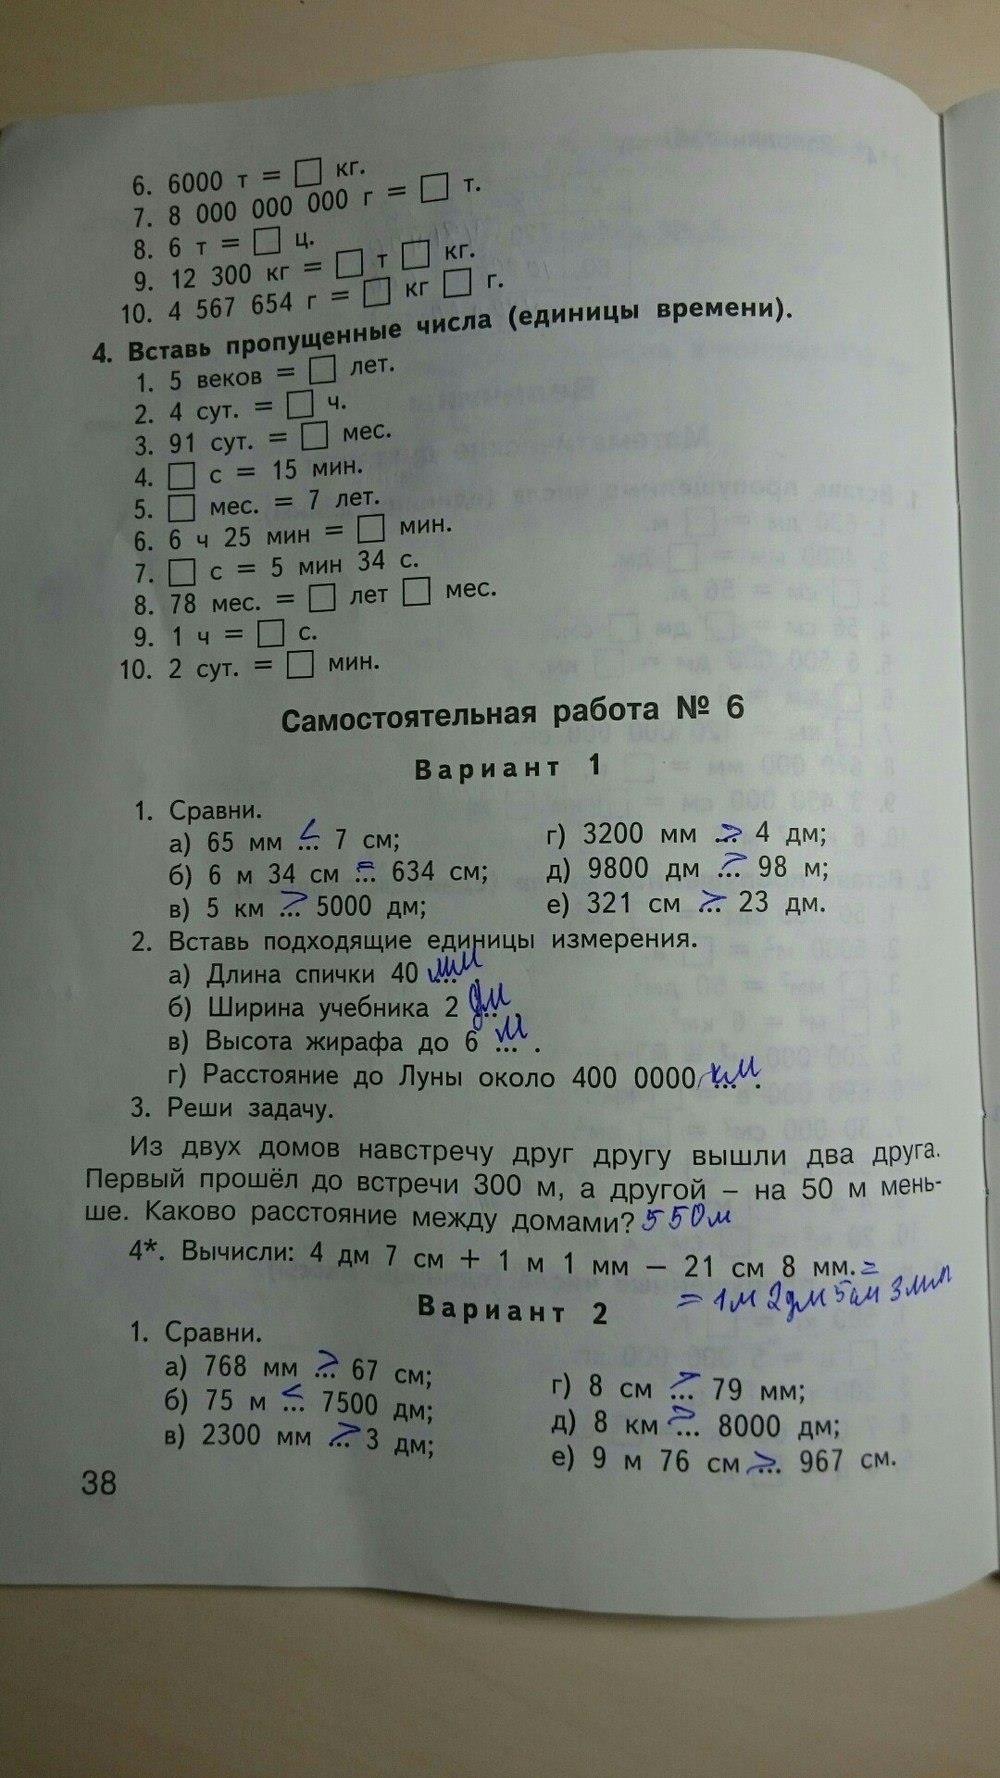 гдз 4 класс контрольно-измерительные материалы страница 38 математика Ситникова